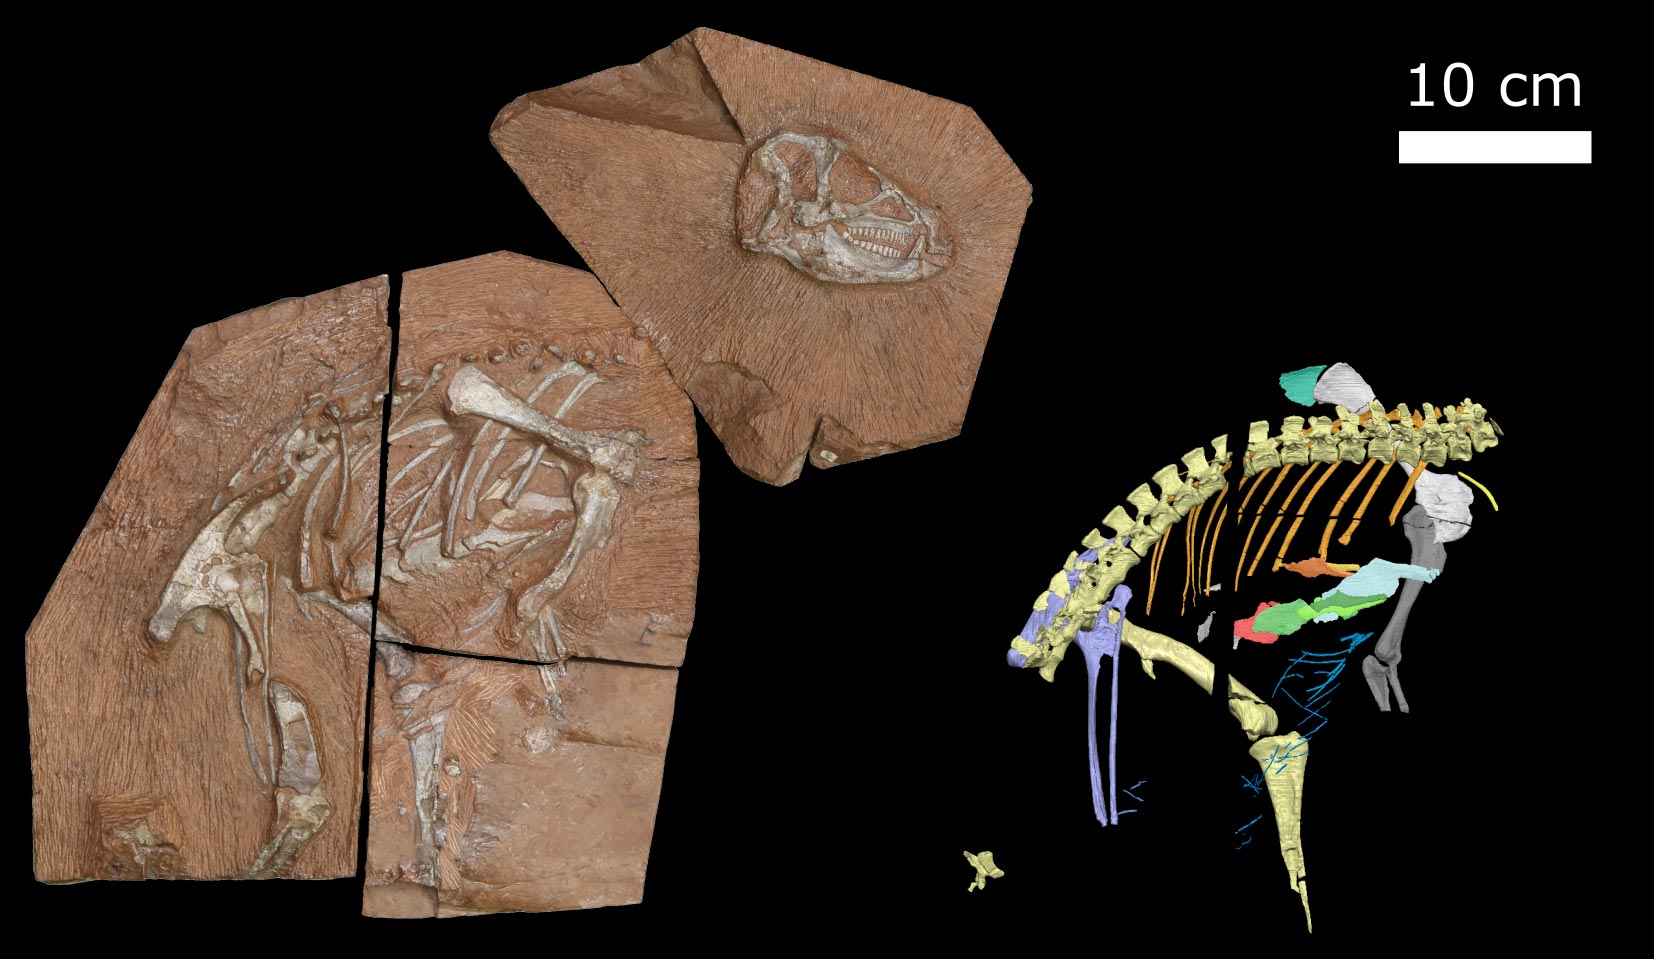 高能X射线展示2亿年前的恐龙Heterodontosaurus tucki如何呼吸